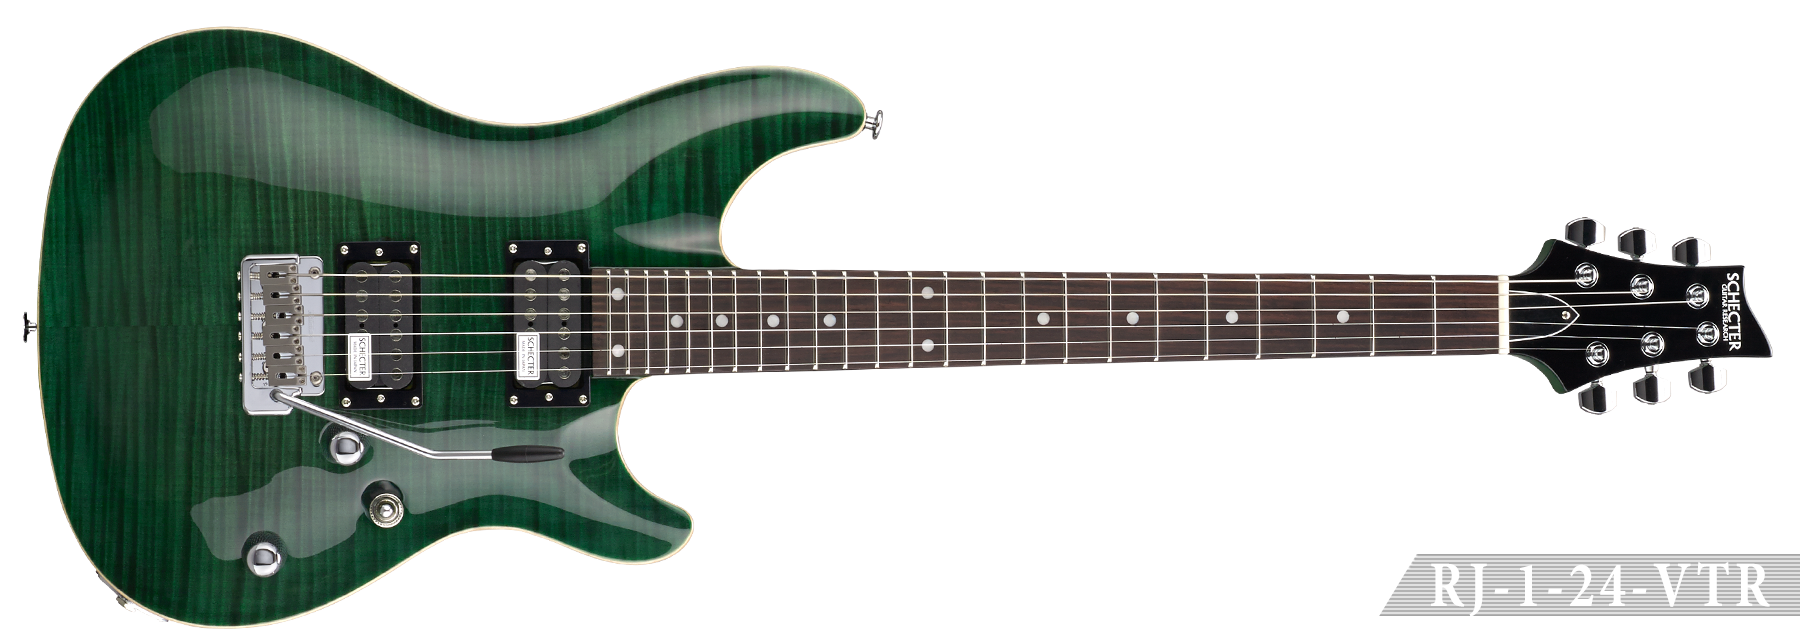 シェクター SCHECTER RJ-1-24-VTR 緑エレキギター - ギター